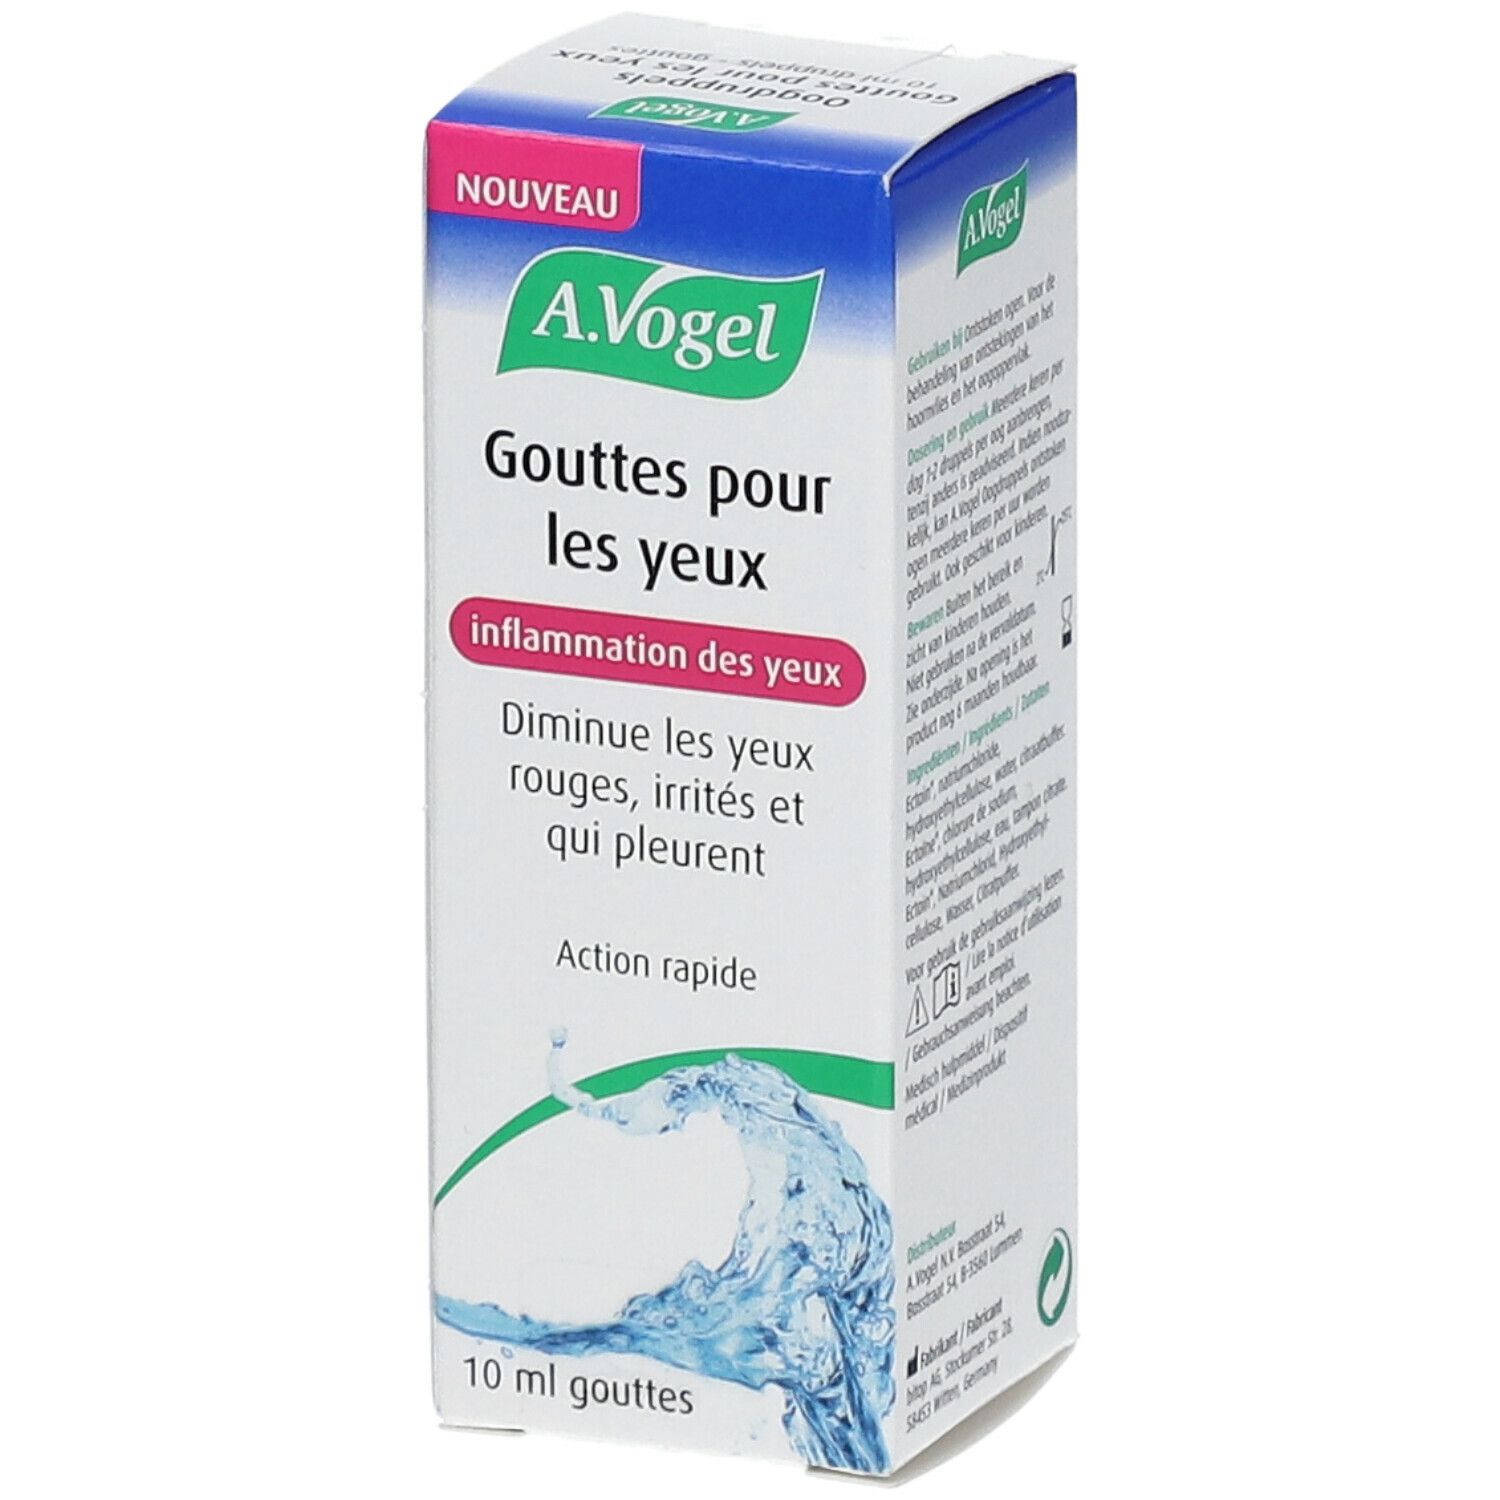 A.Vogel Gouttes Inflammation Des Yeux Flacon 10ml